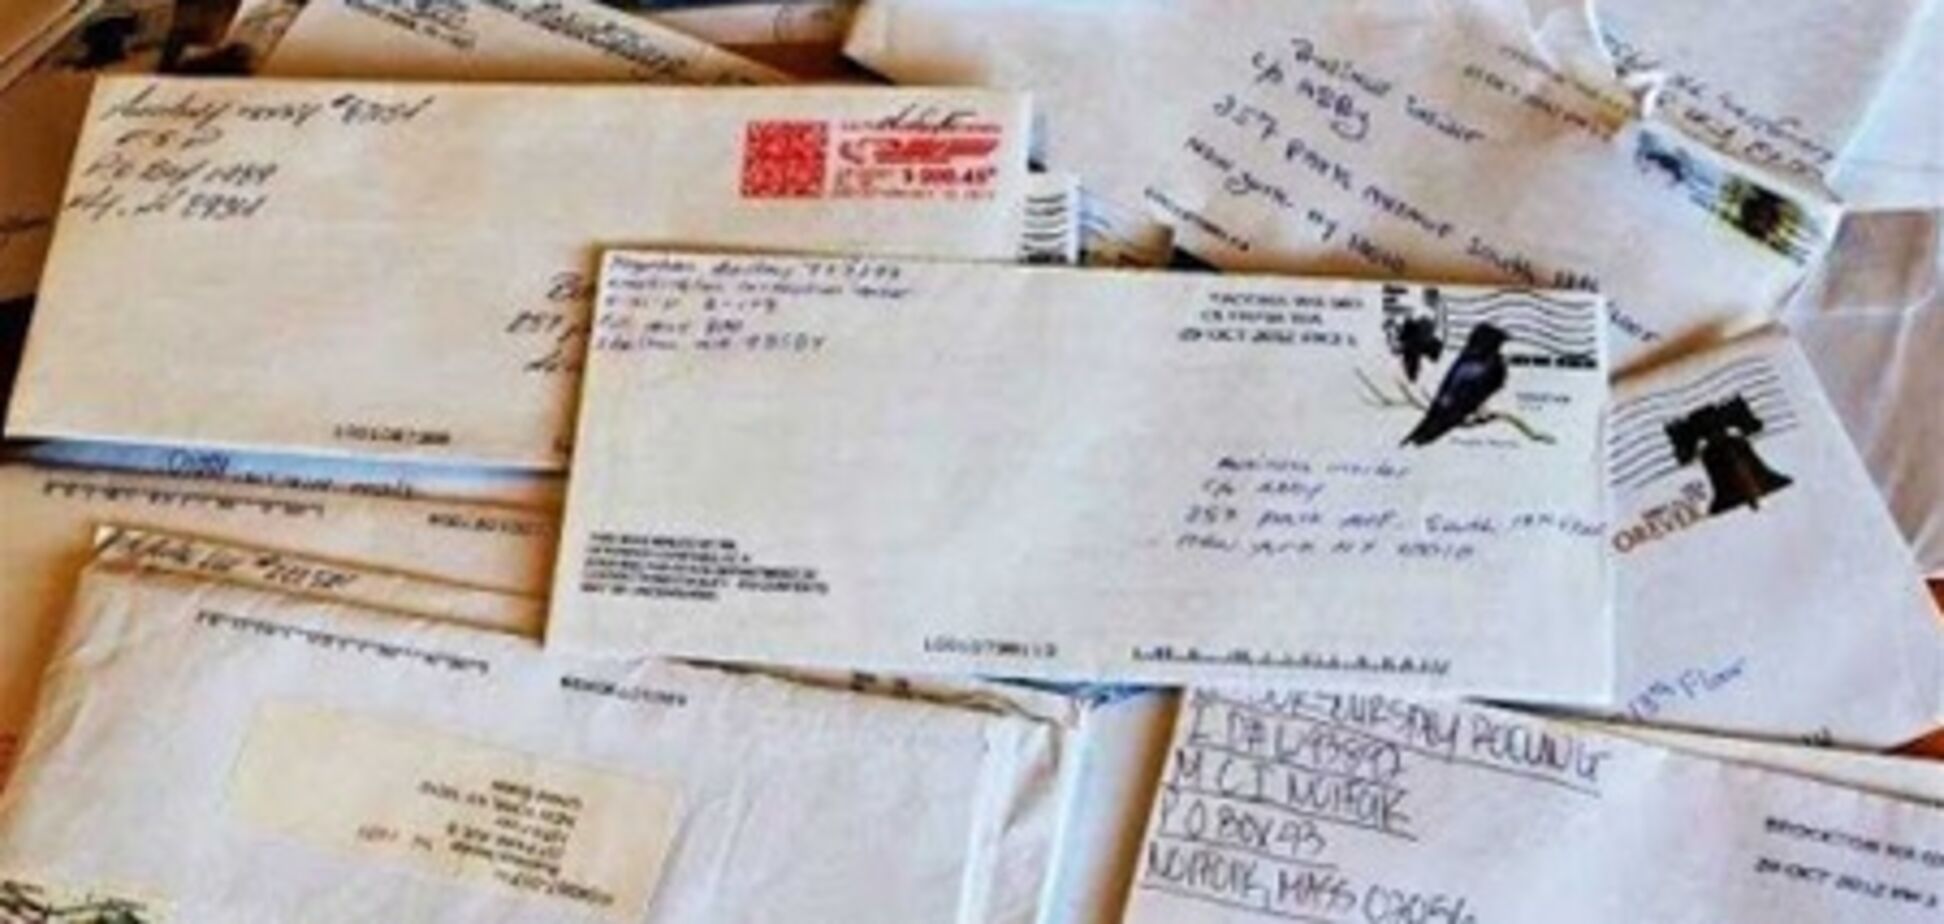 Поймана подозреваемая в отправке писем с ядом Обаме